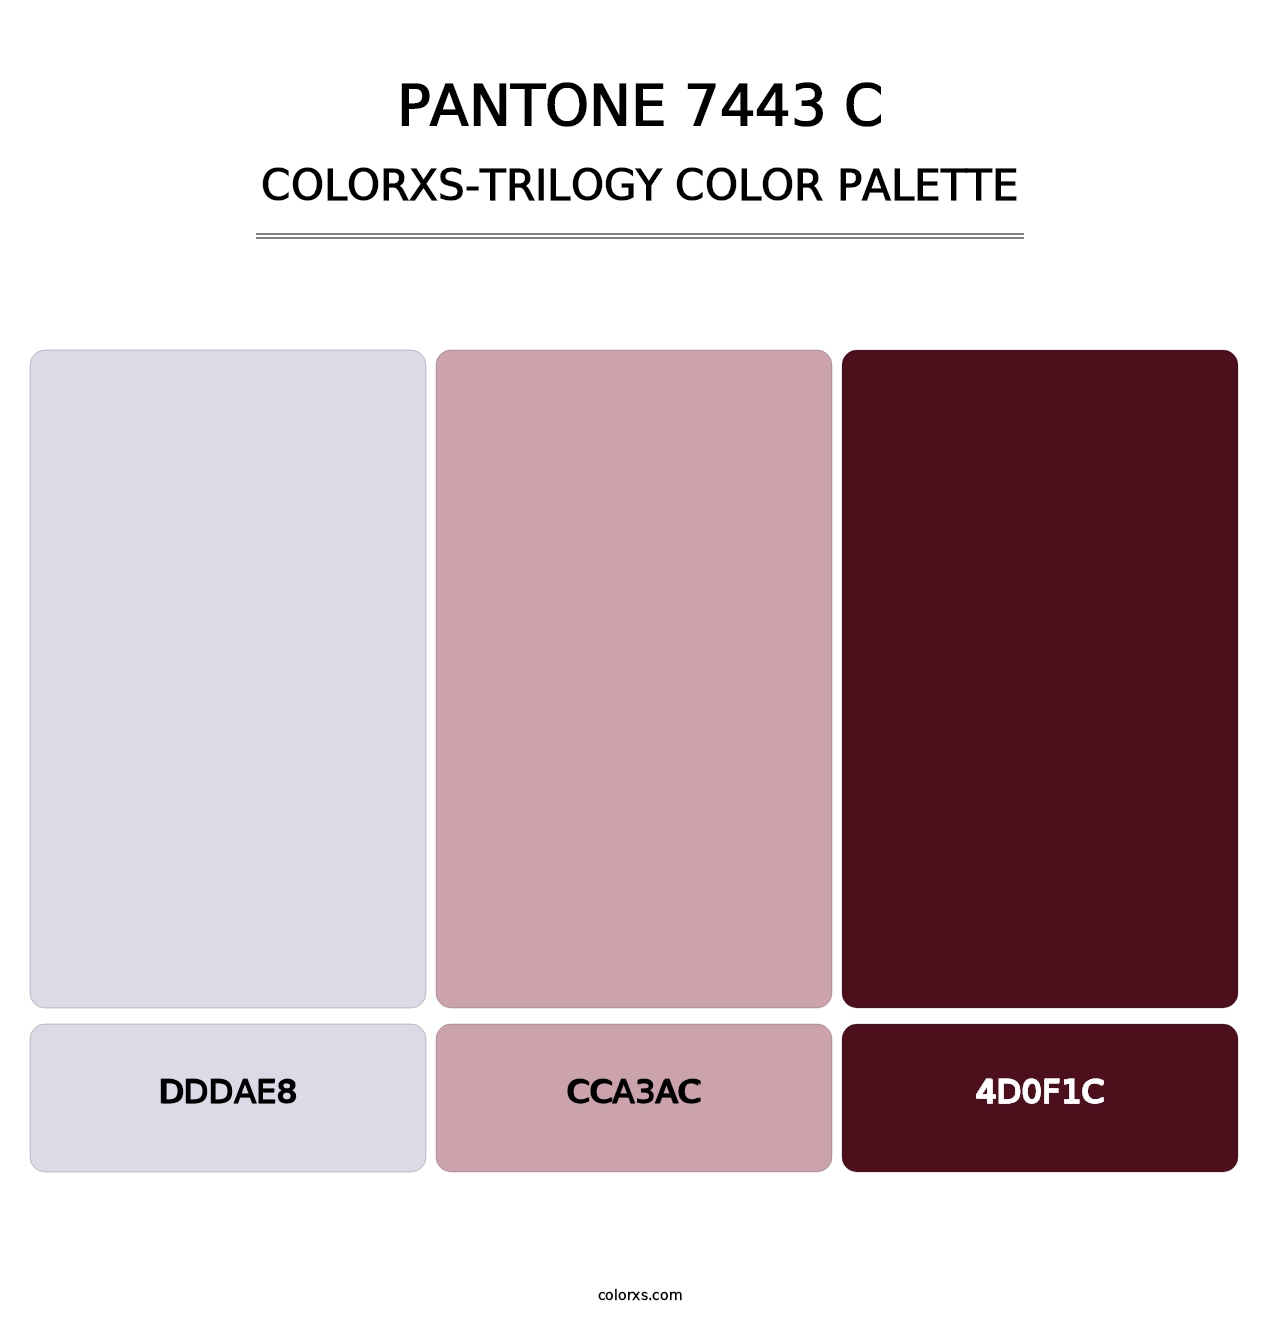 PANTONE 7443 C - Colorxs Trilogy Palette